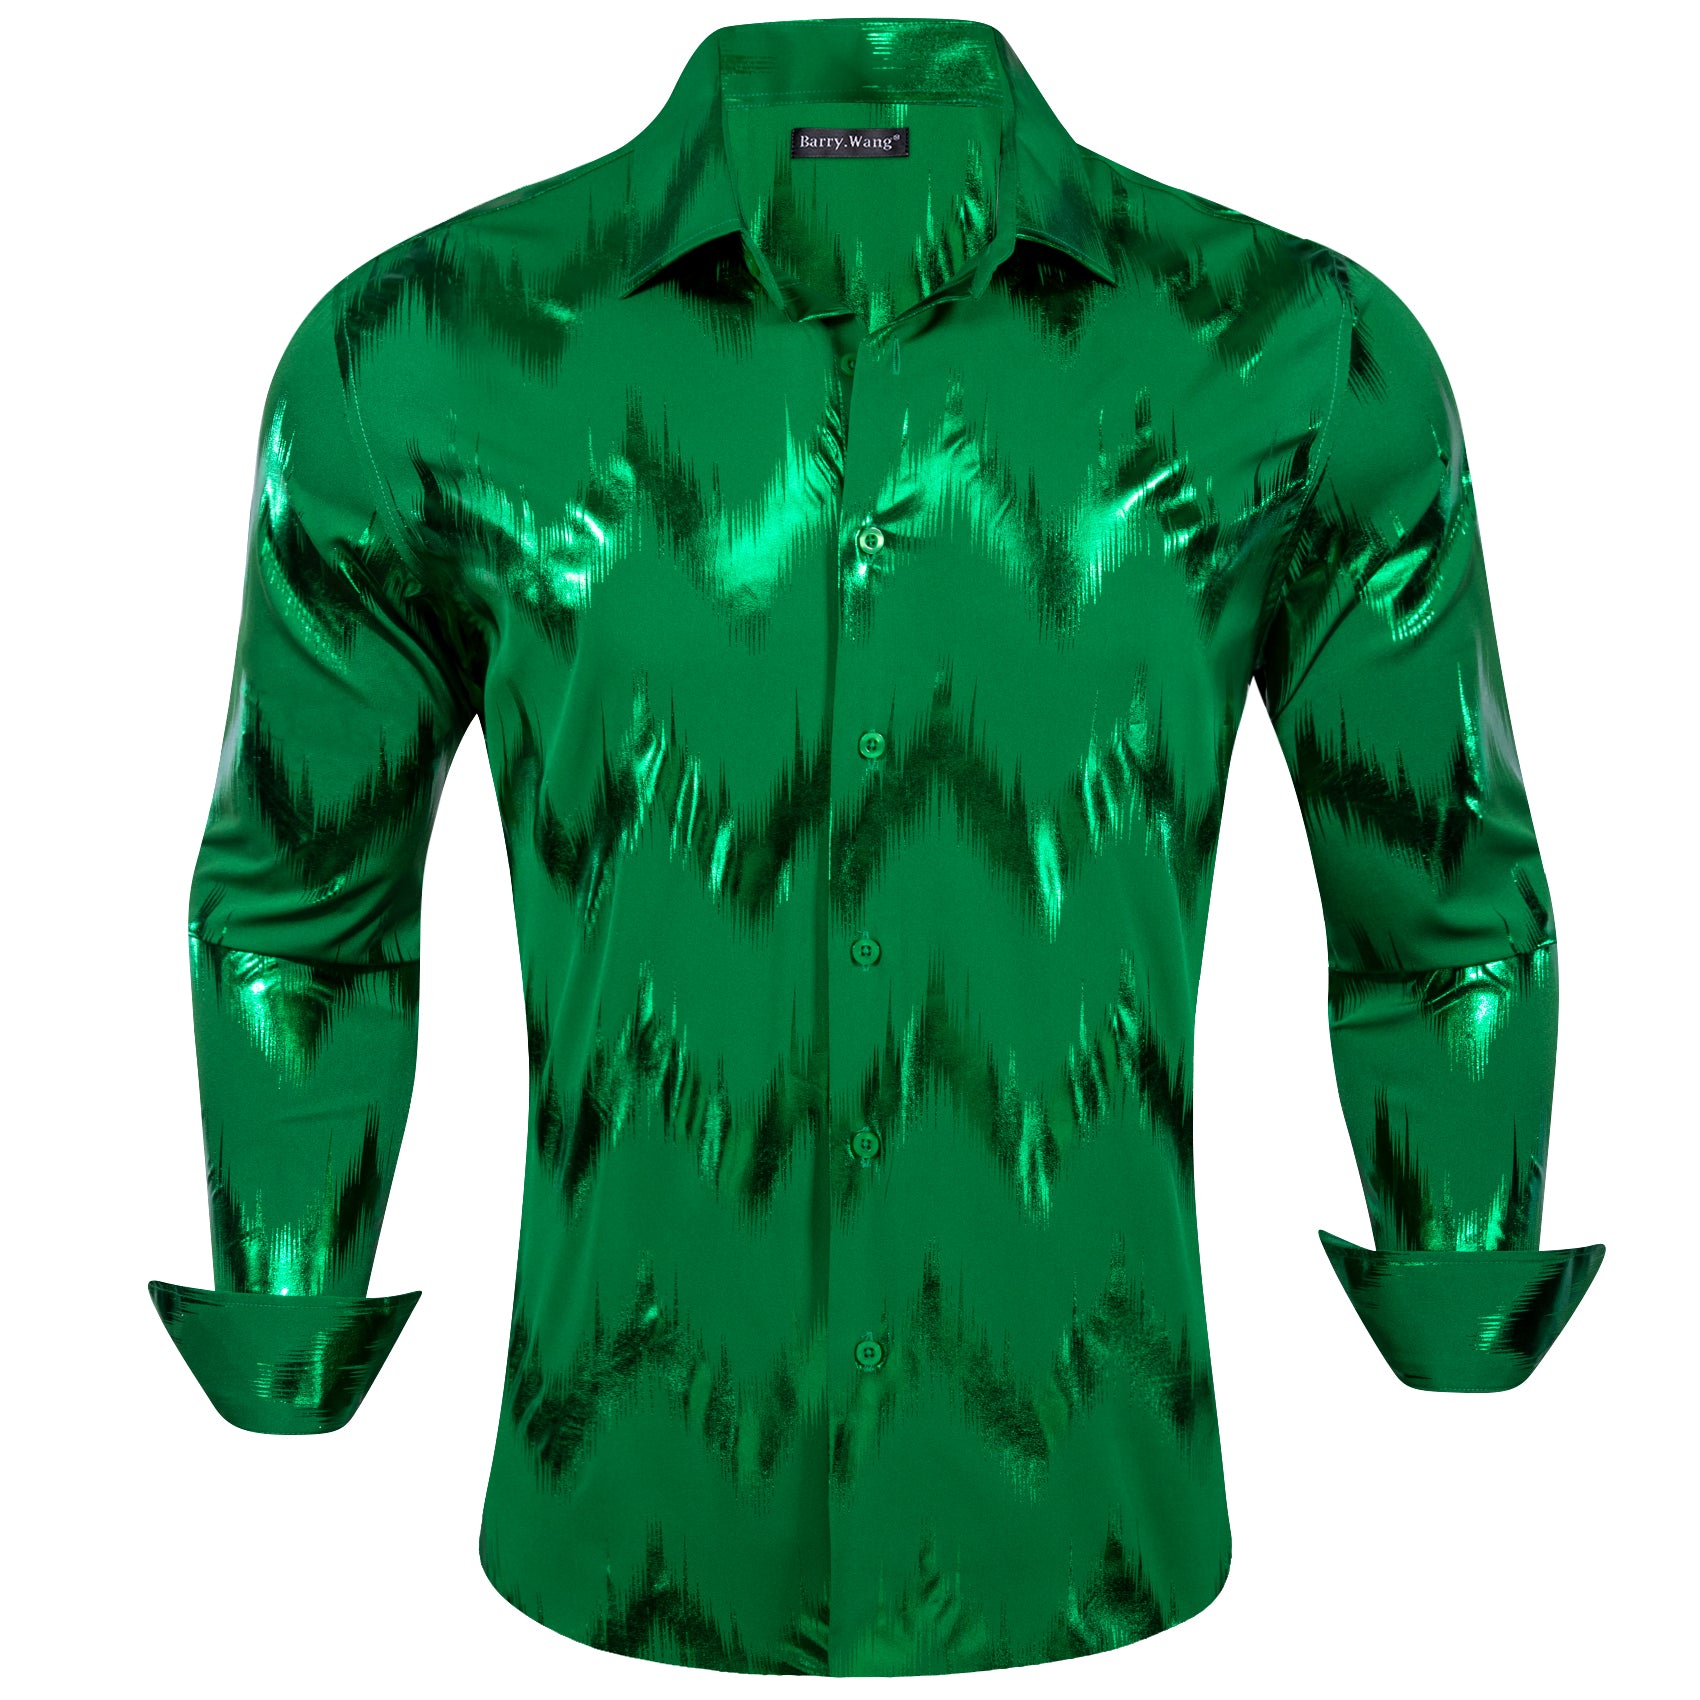 Barry.wang Stylish Shirt Bronzing Printing Green Men's Shirt